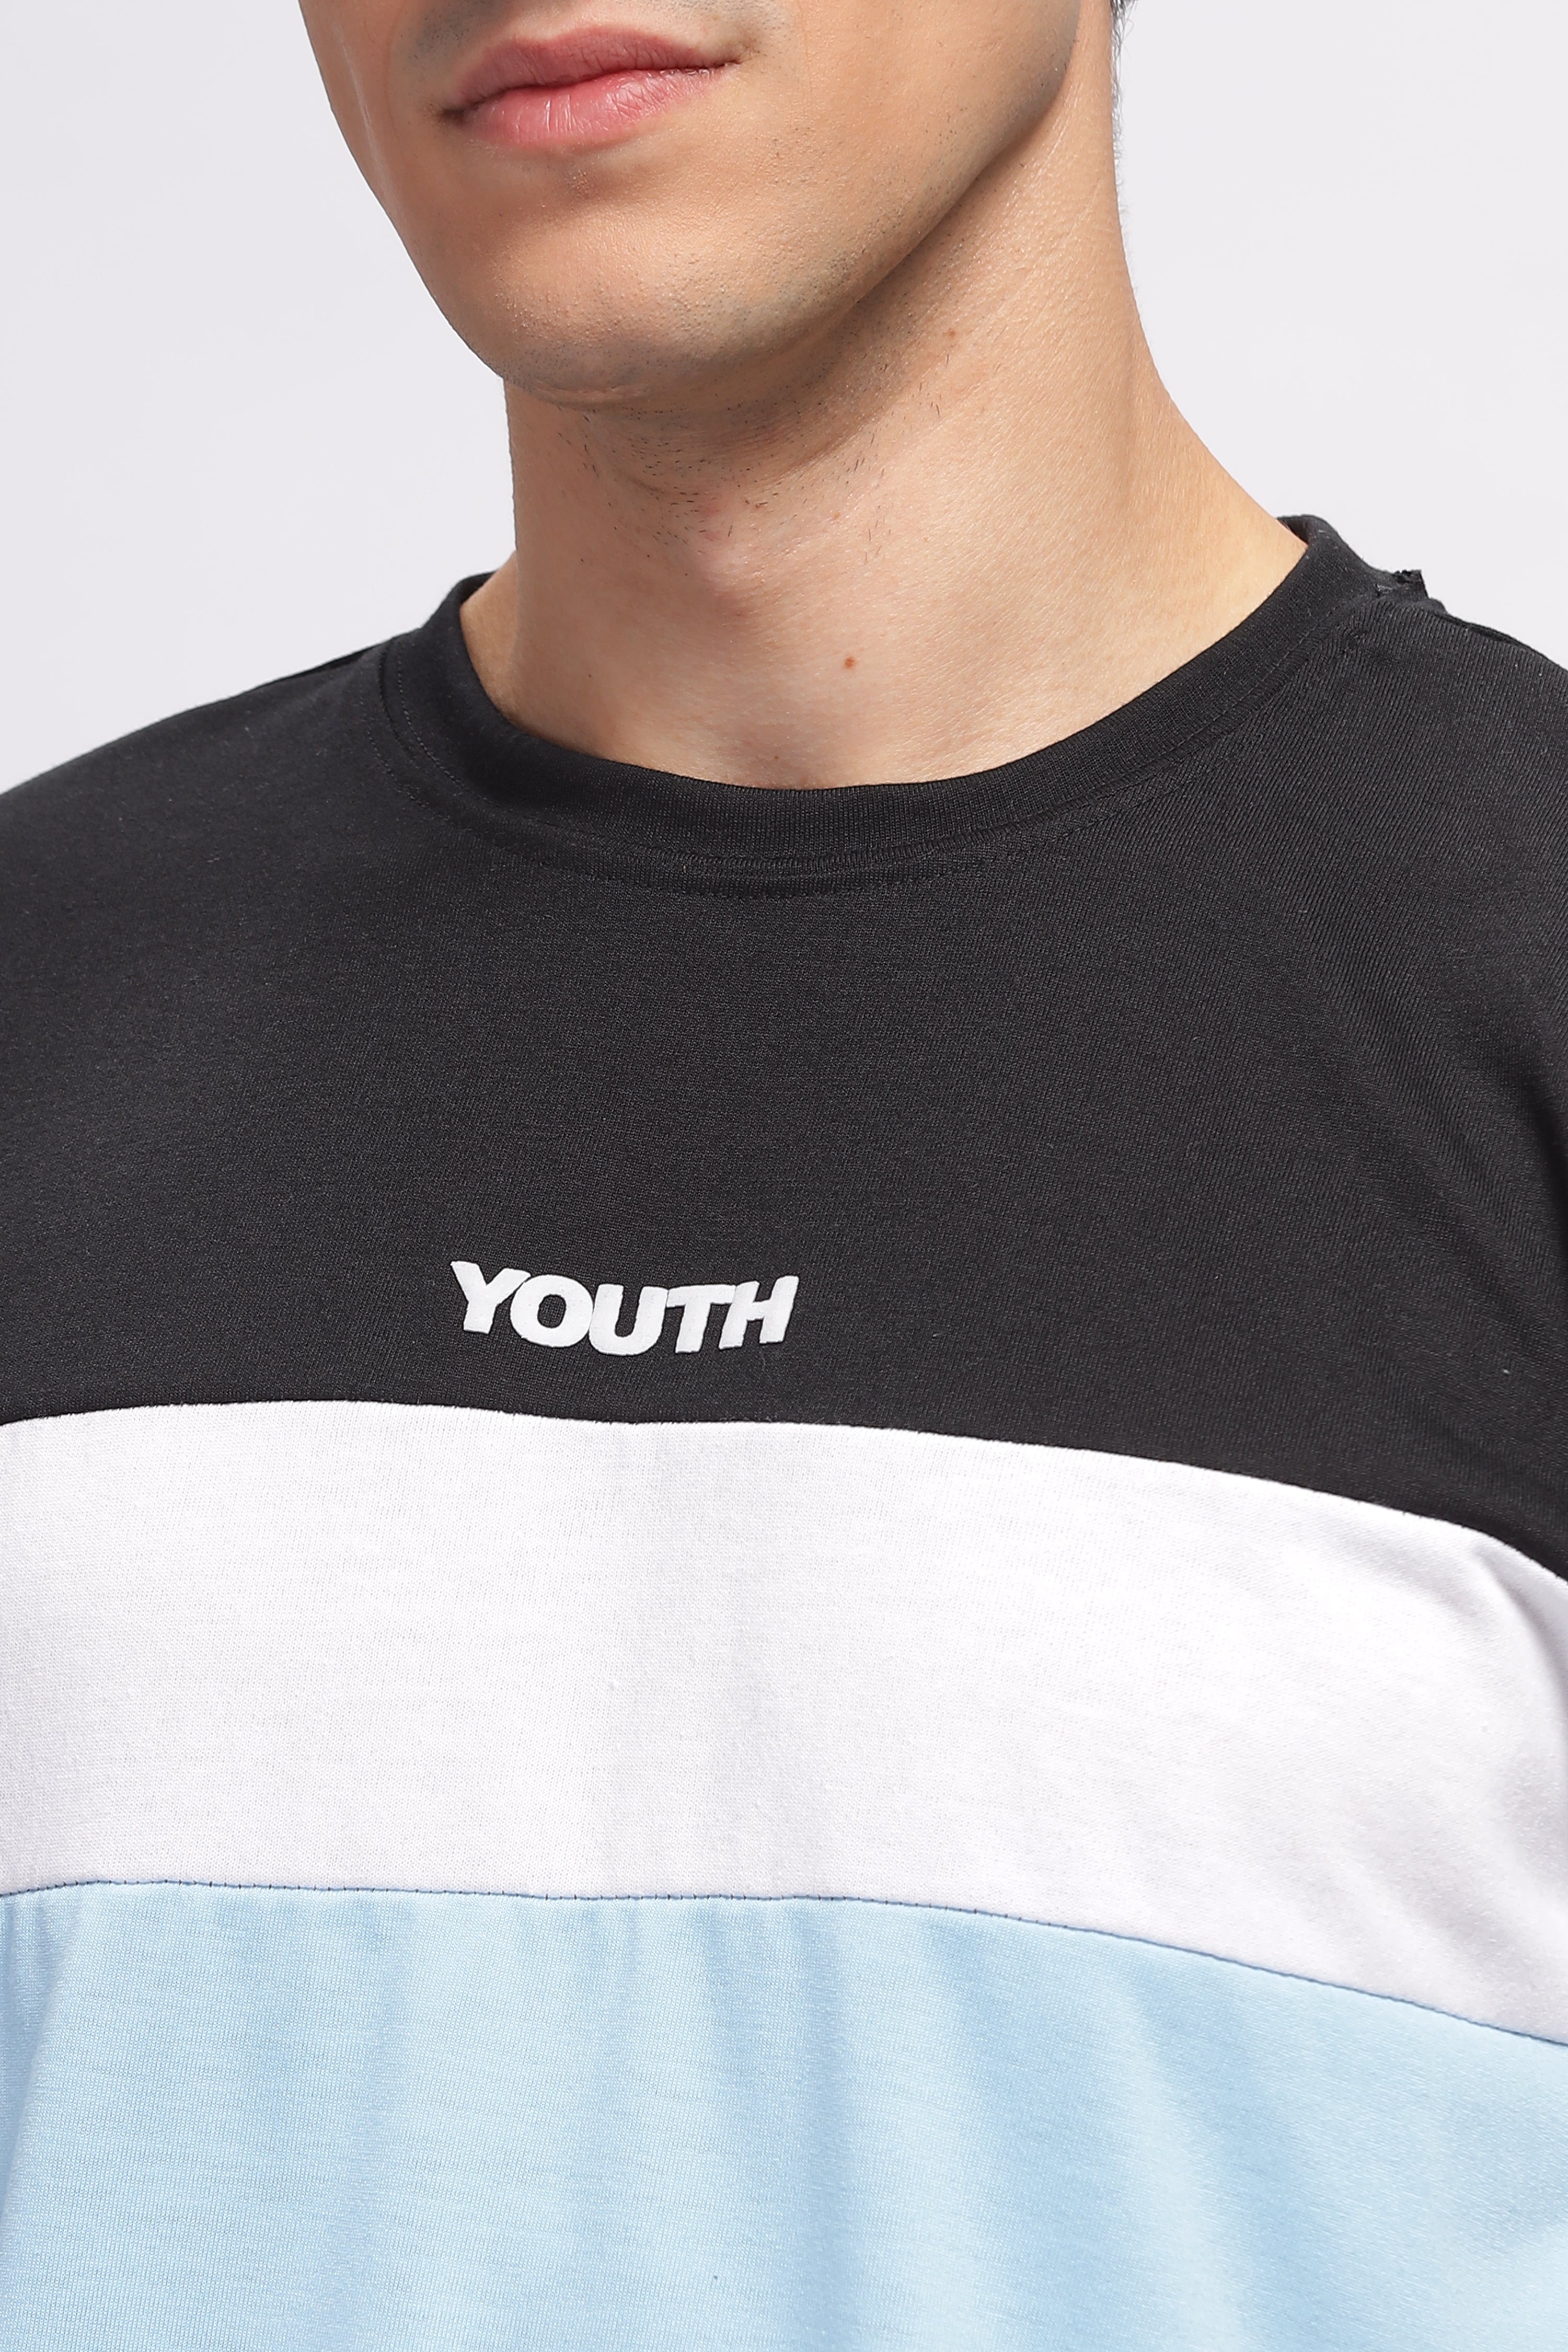 Black & Blue "Youth" Color Block Cotton T-Shirt